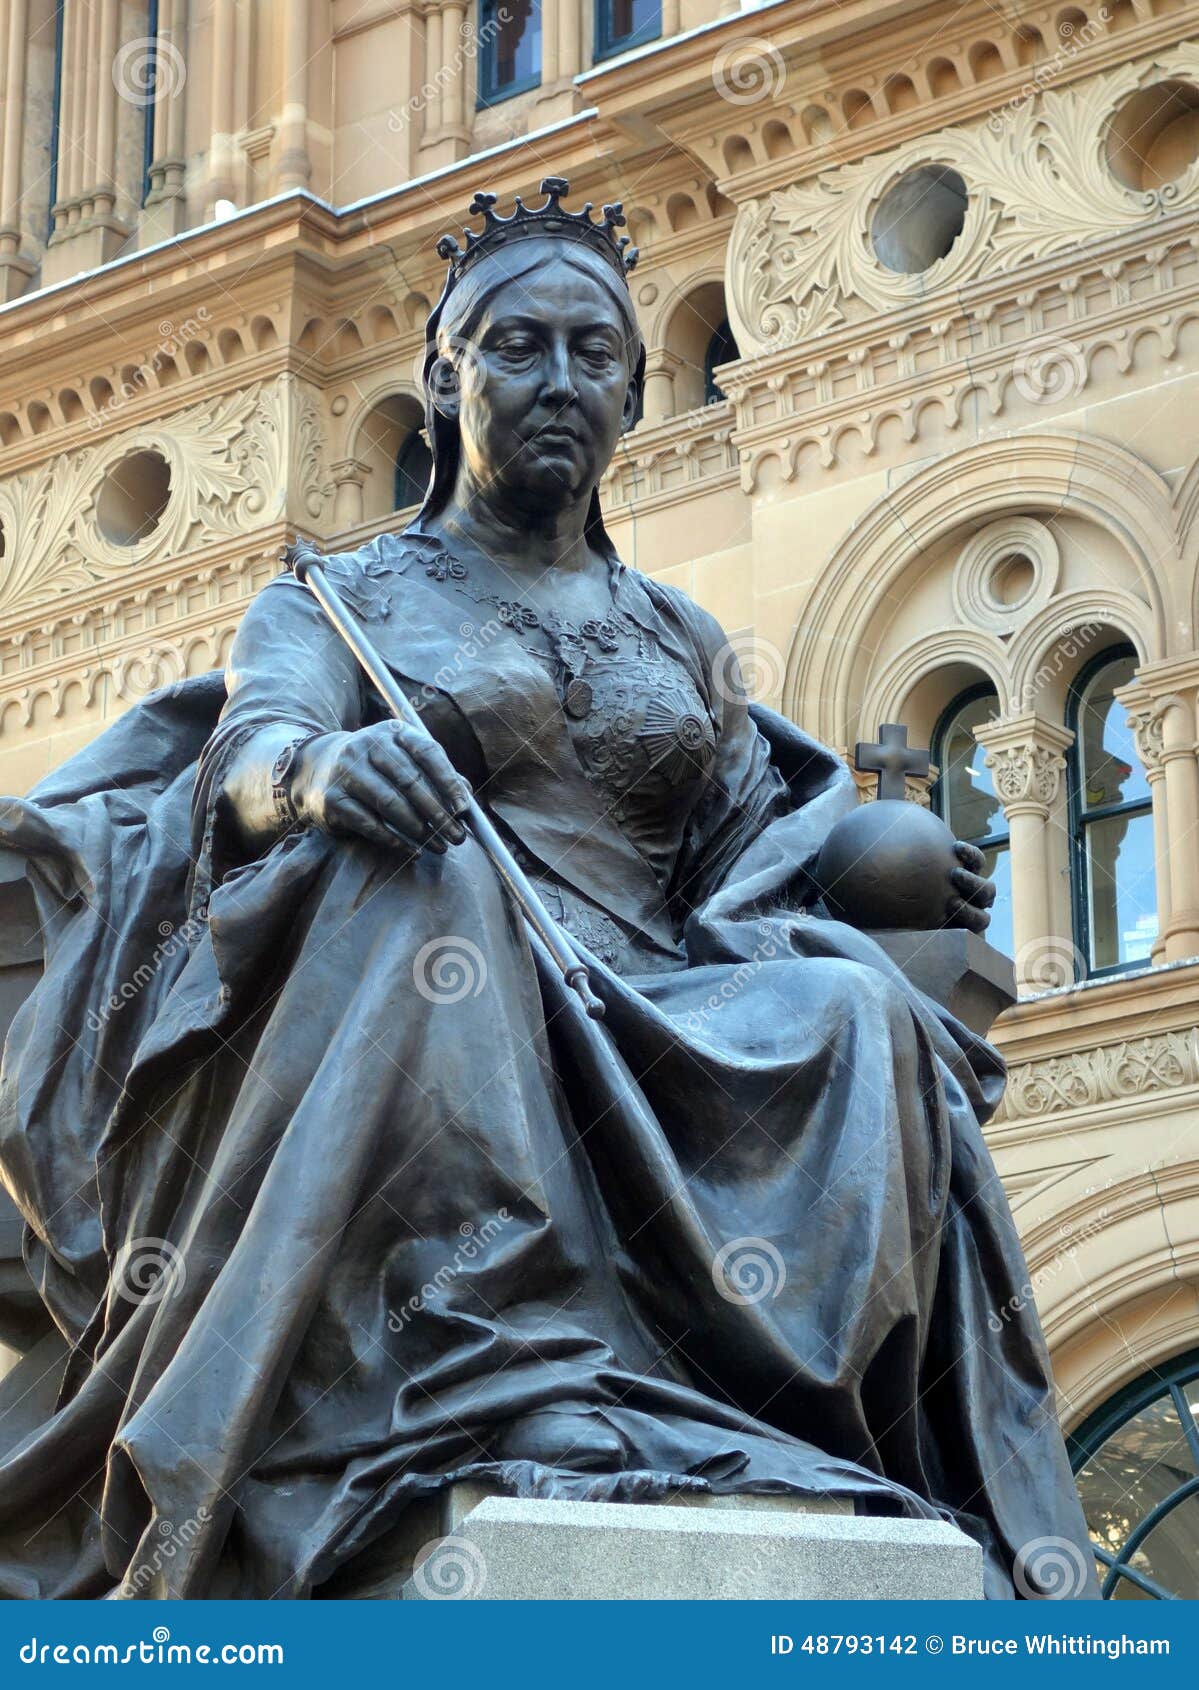 Statue of Queen Victoria restored - Stabroek News